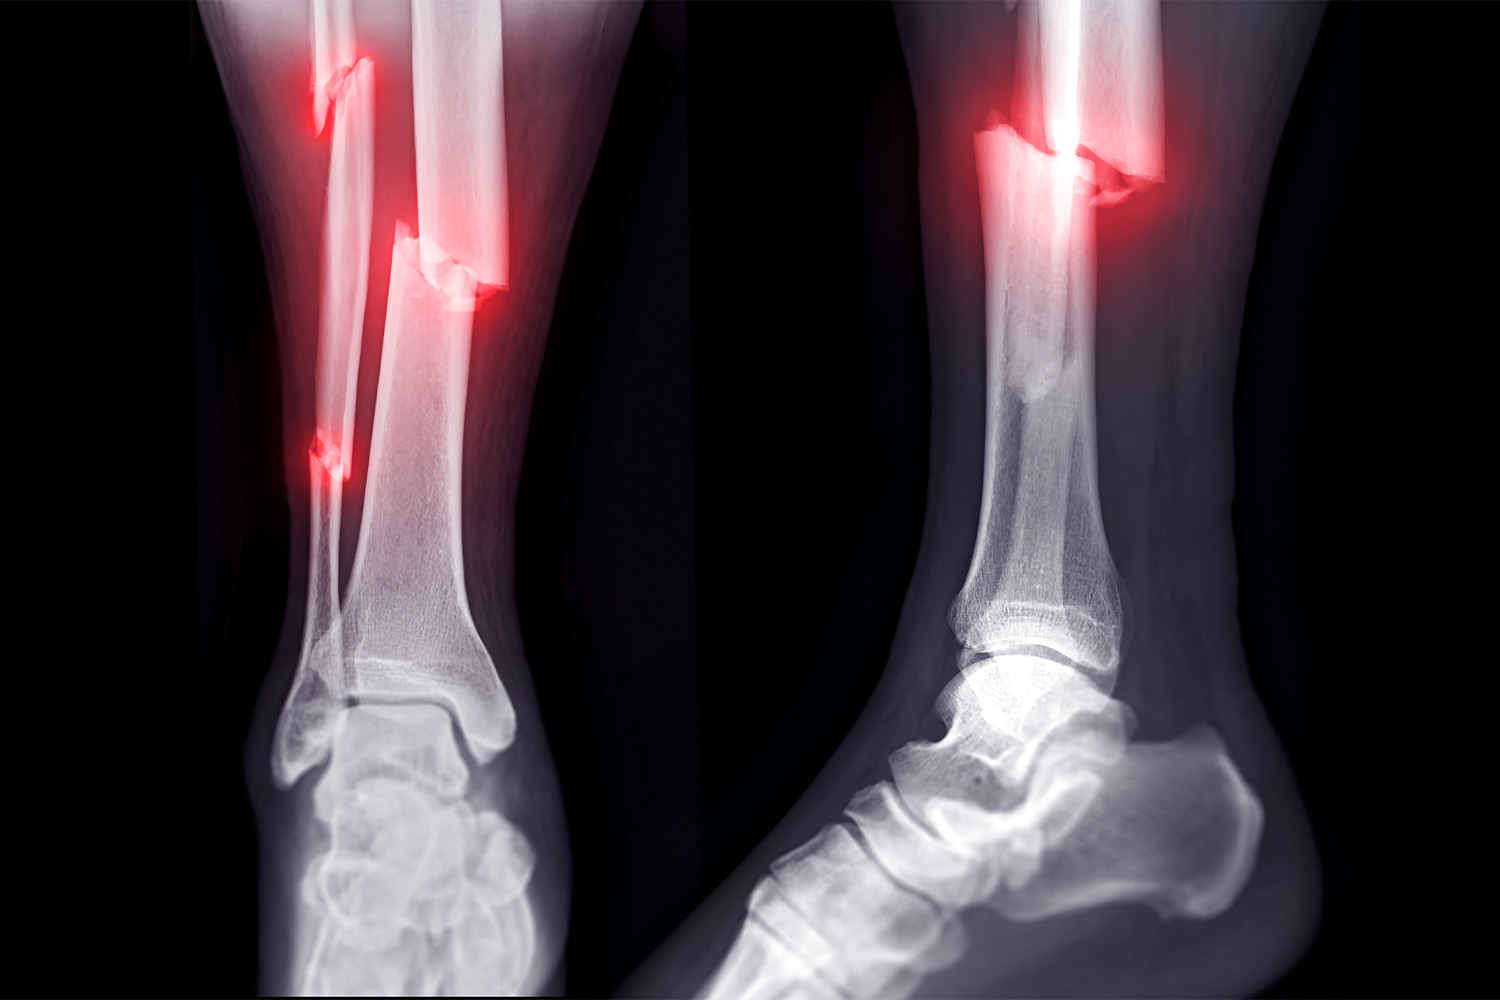 Diagnosing bone fractures